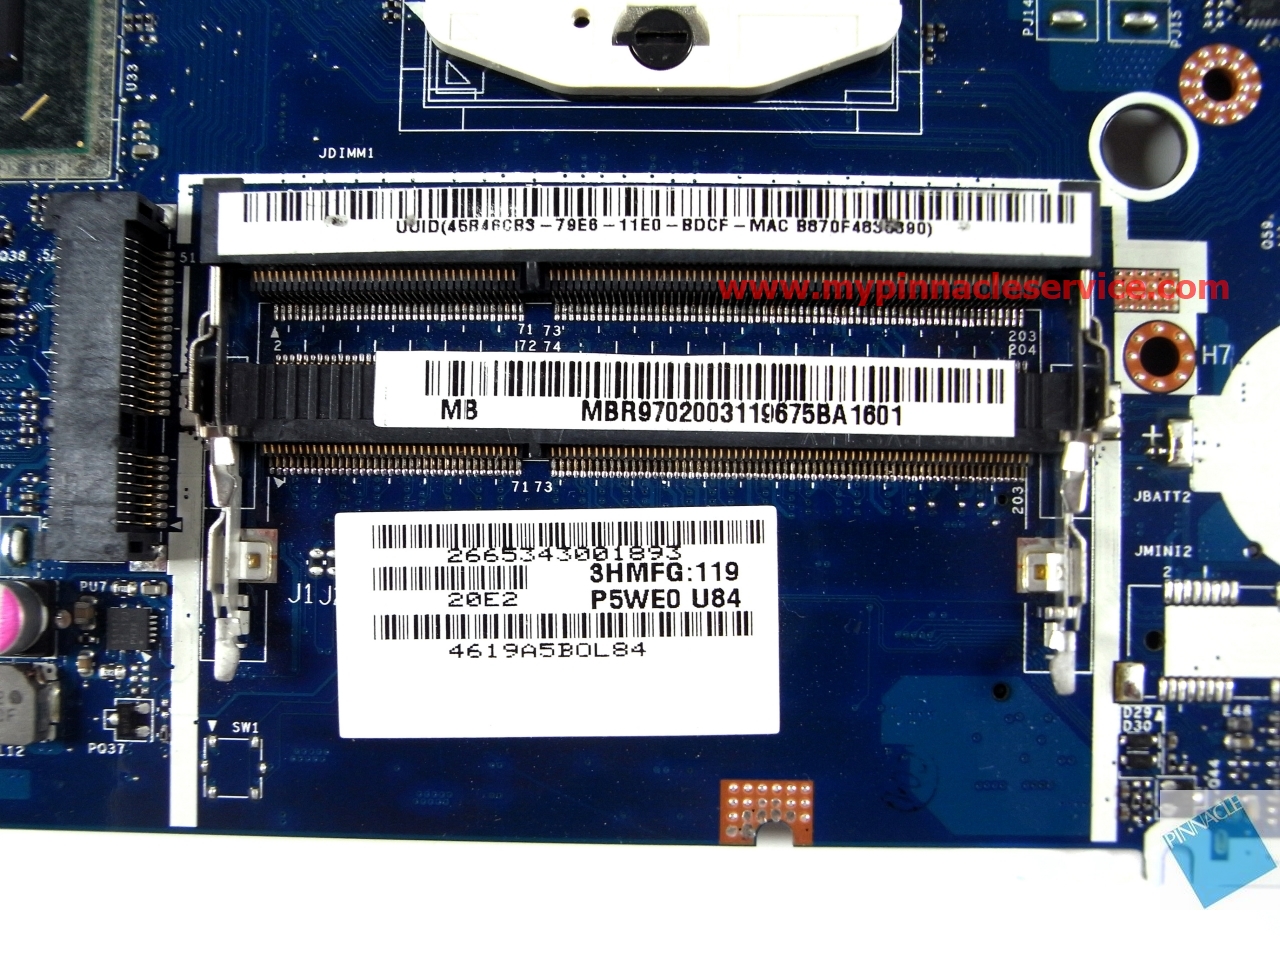 mbr9702003-motherboard-for-acer-aspire-5350-5750-5755-gateway-nv57h-p5we0-la-6901p-r0010631.jpg